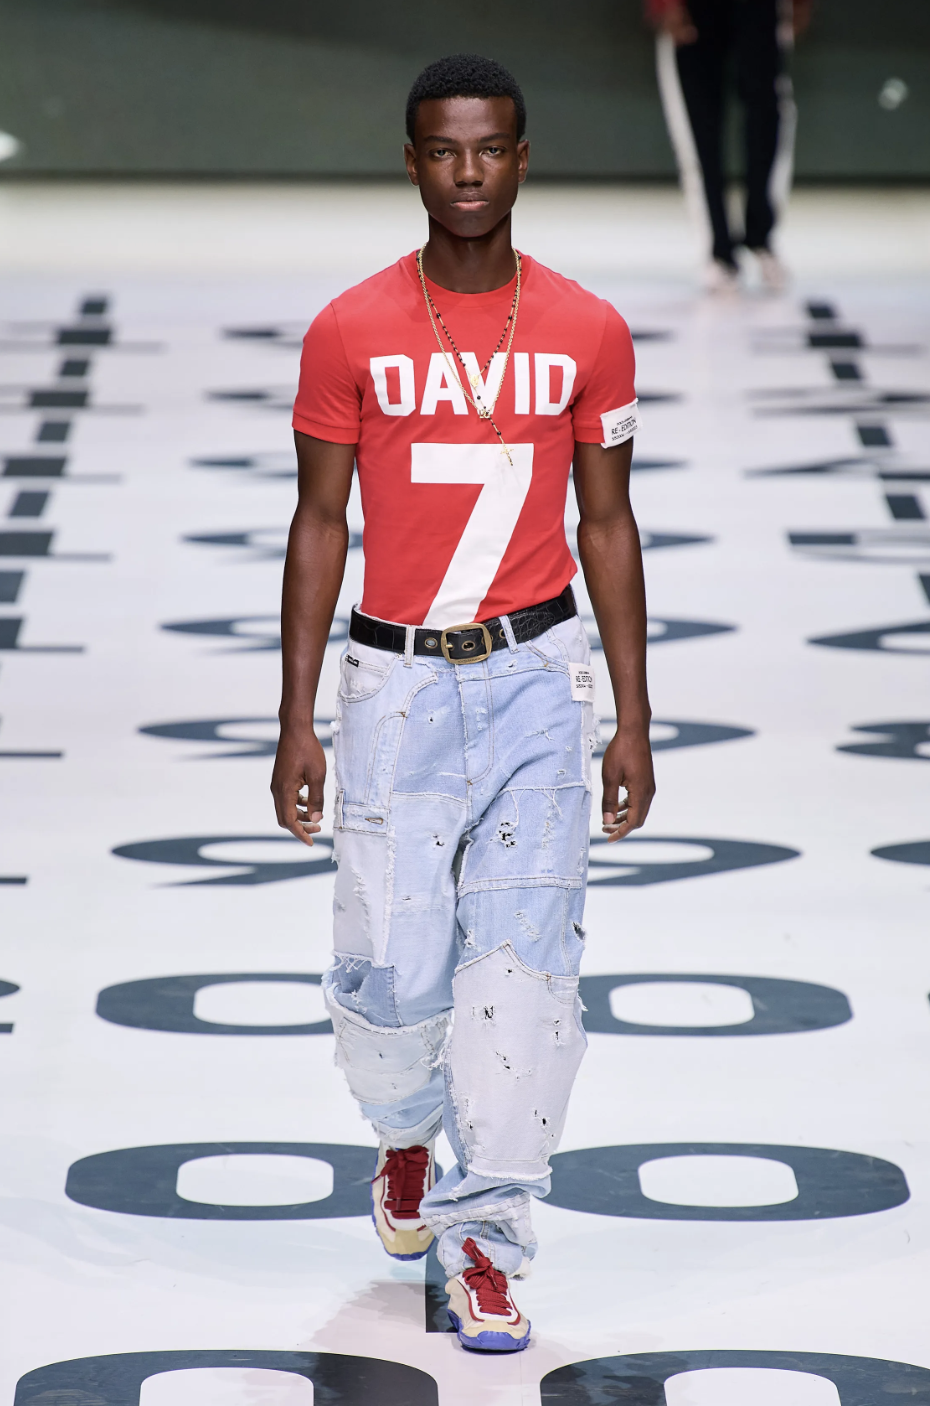 s-Dolce & Gabbana Mens Underwear - Spring - Summer 2022